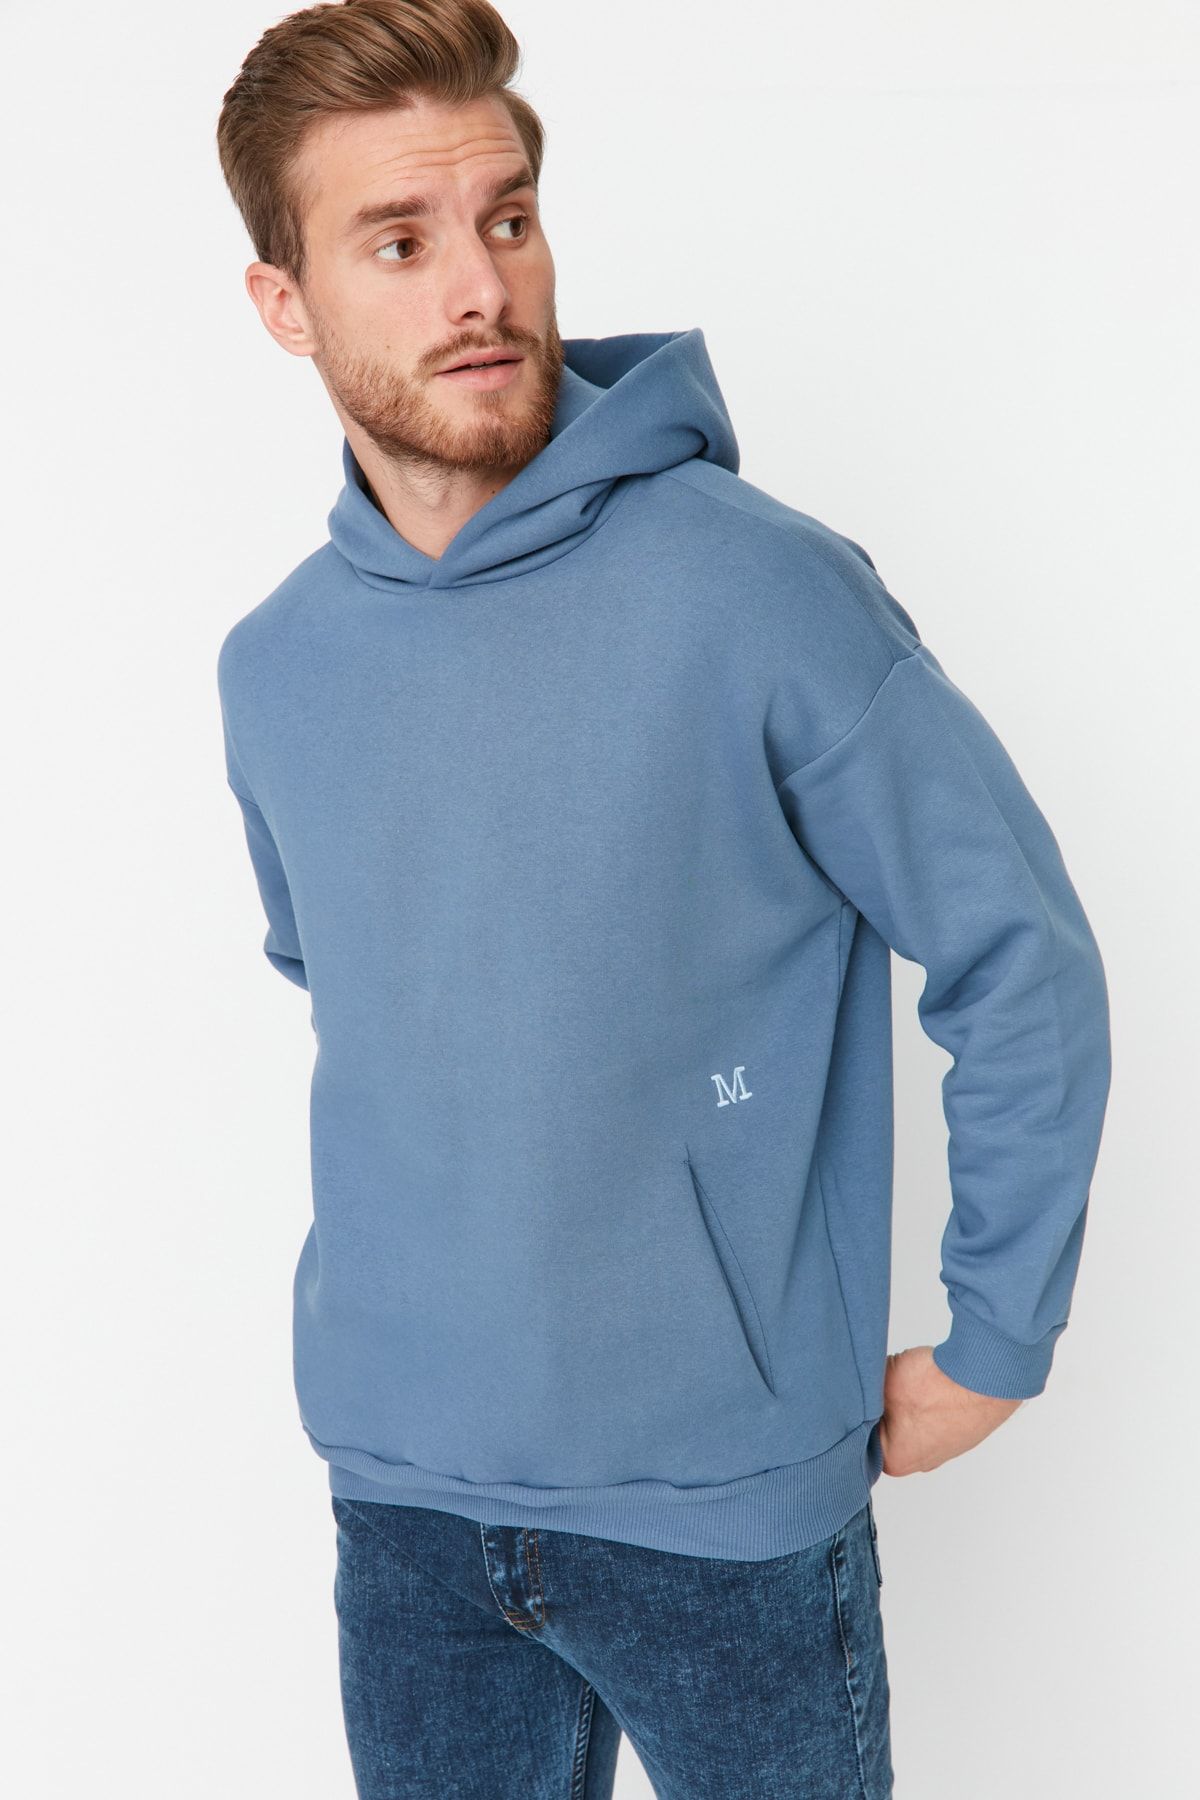 Herren-Sweatshirt mit winzigen dickes Collection und Trendyol geschnittenes, übergroßes/weit Blaues, Kapuze Trendyol Stickereien -